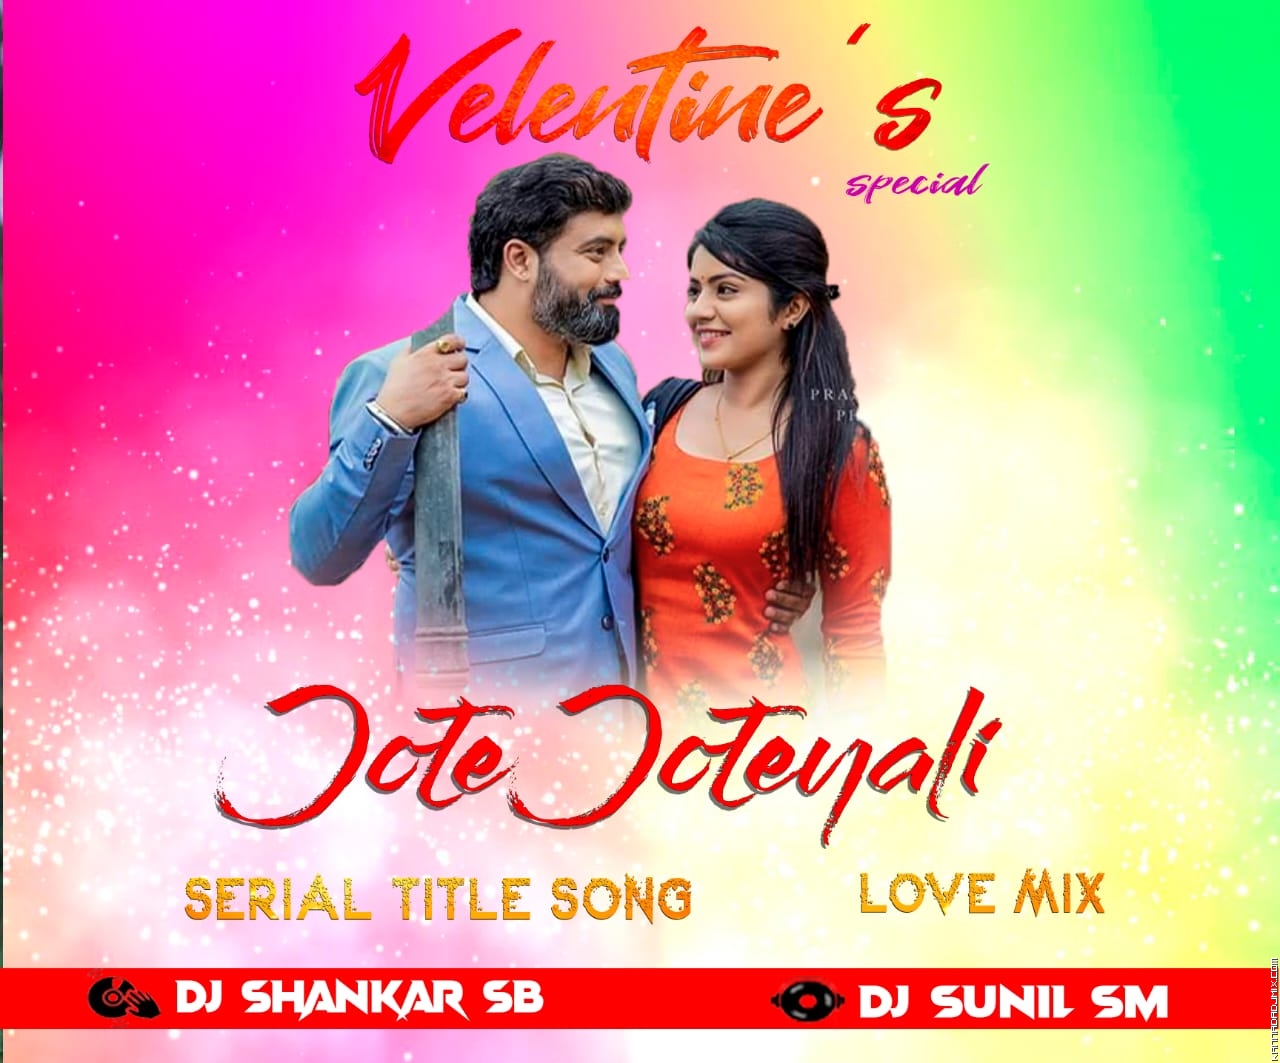 JOTE_JOTEYALI_Serial Title Song REMIX DJ SHANKAR SB DJ SUNIL SM.mp3